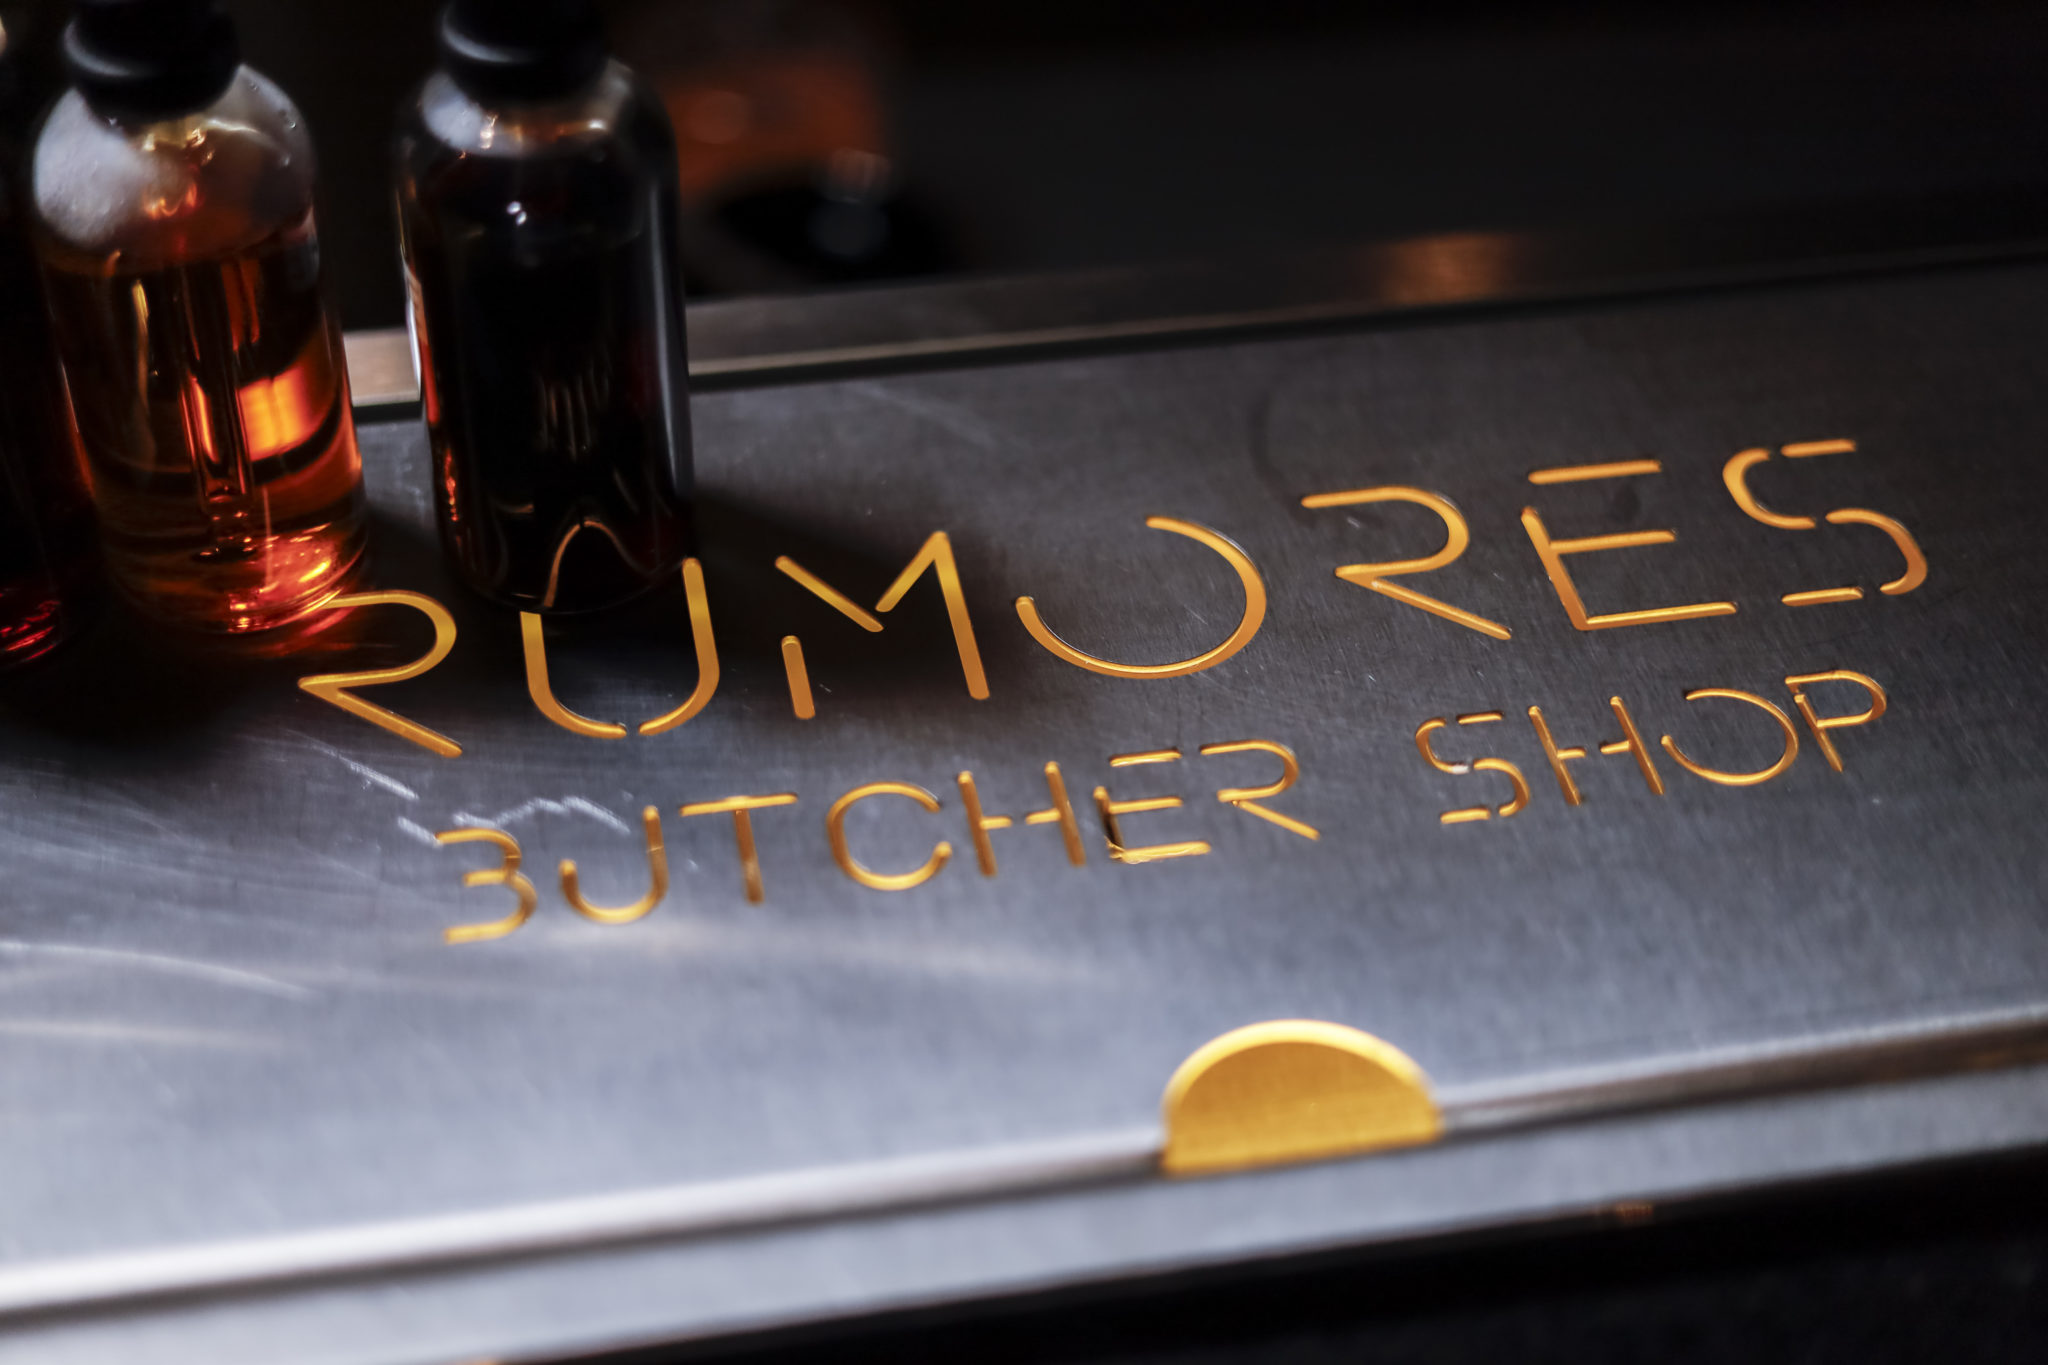 Hay rumores de un nuevo speakeasy en la ciudad: Rumores Butcher Shop celebra su apertura